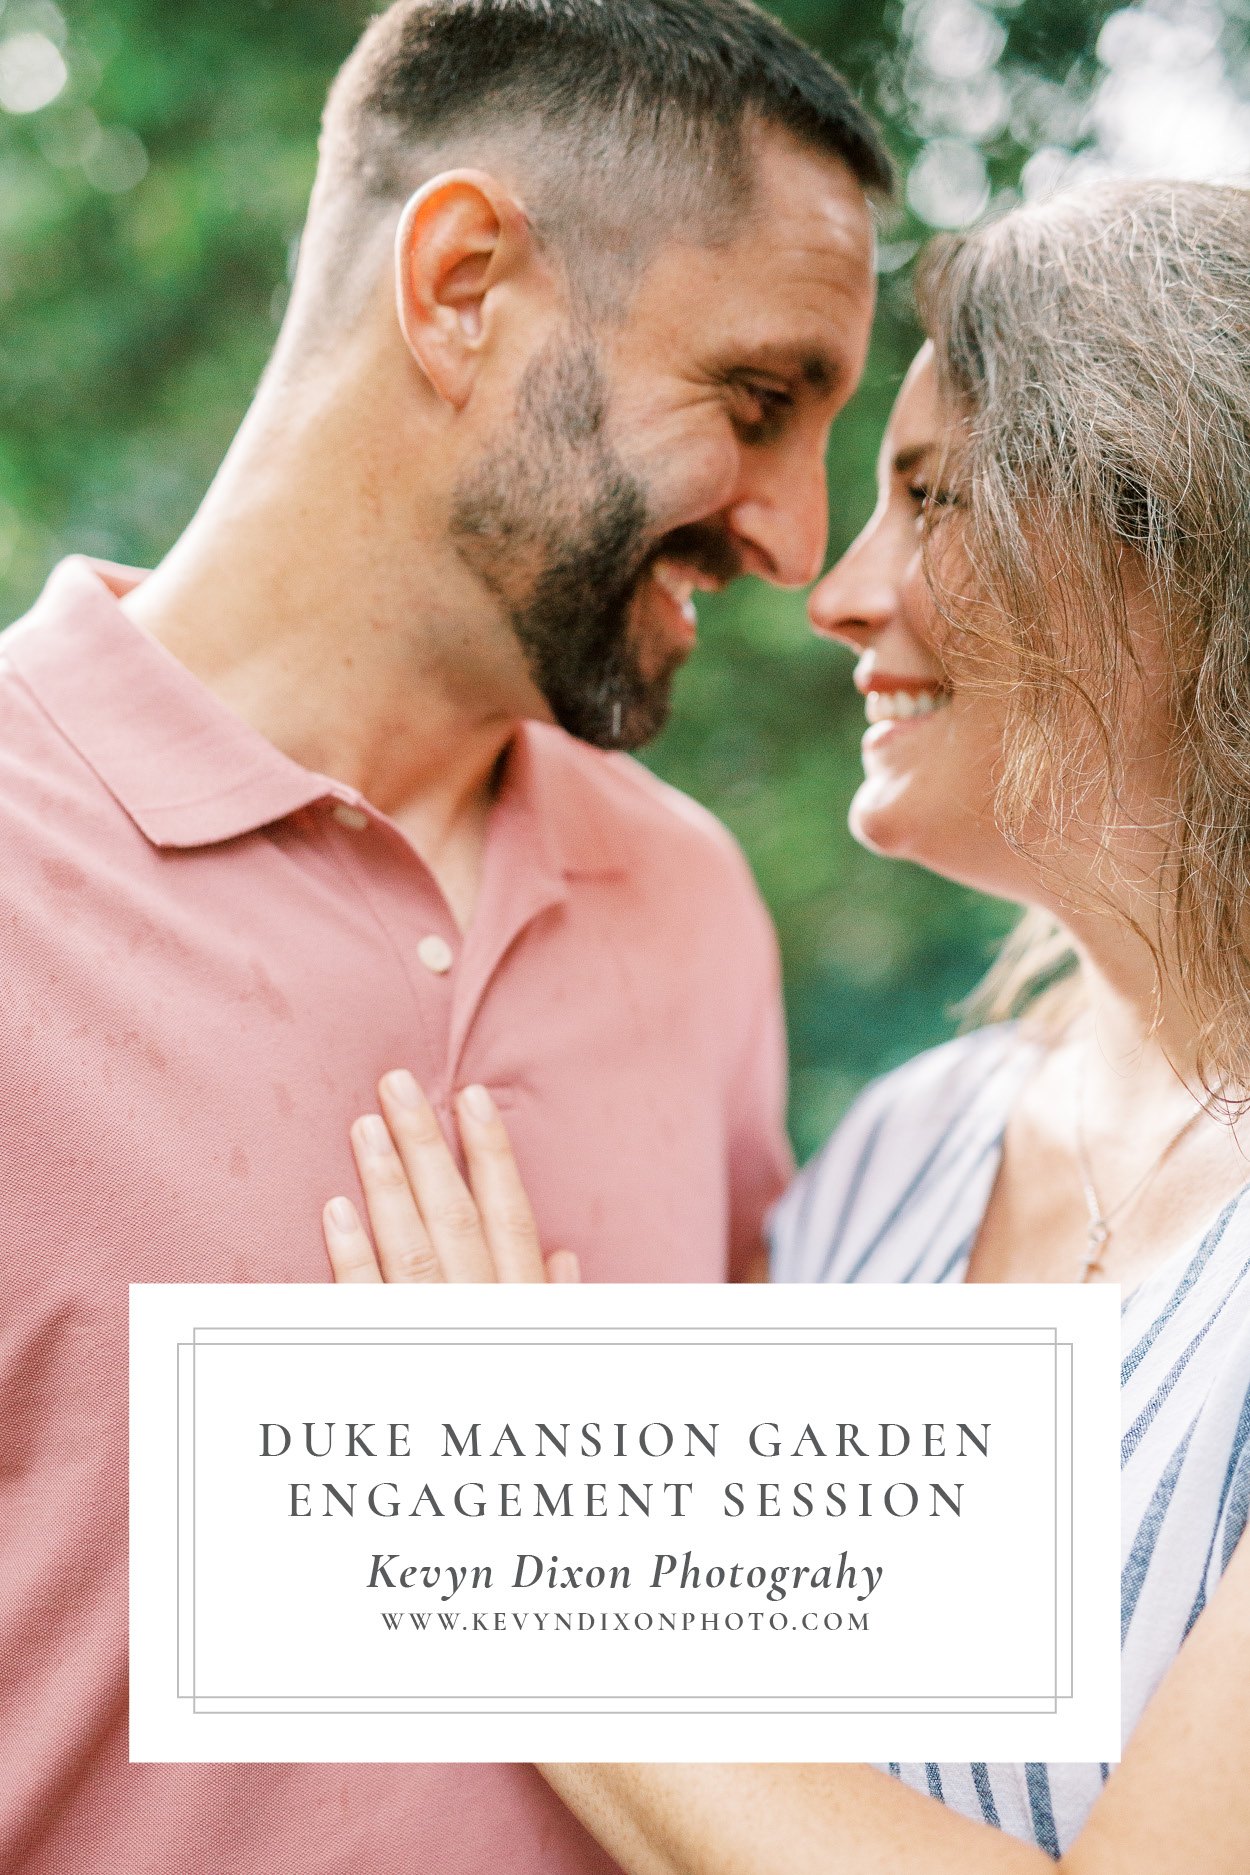 Duke Mansion Garden Engagement Session